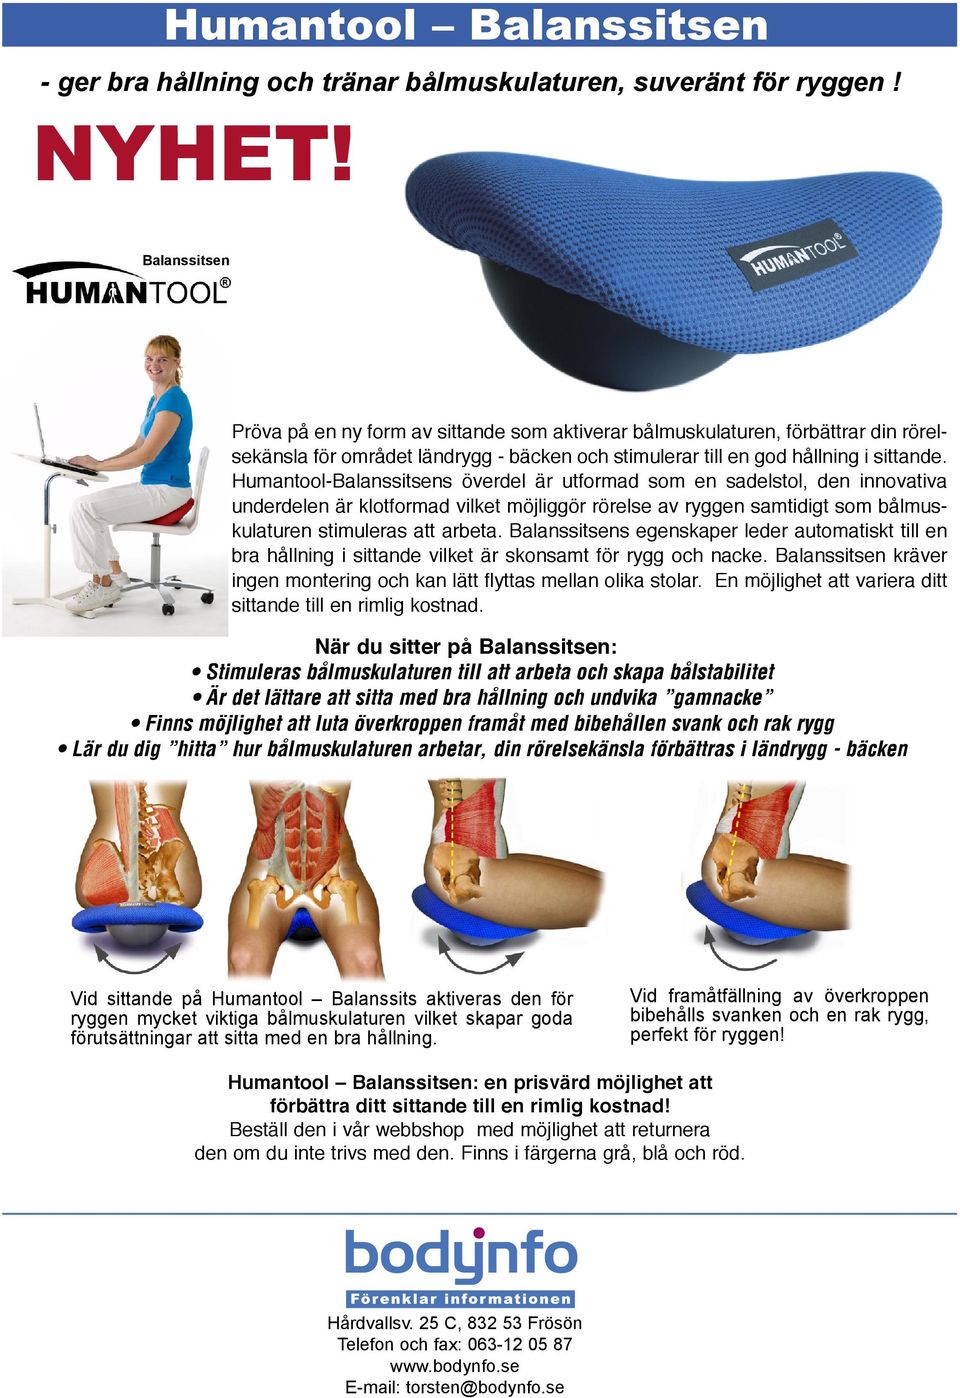 Humantool-Balanssitsens överdel är utformad som en sadelstol, den innovativa underdelen är klotformad vilket möjliggör rörelse av ryggen samtidigt som bålmuskulaturen stimuleras att arbeta.